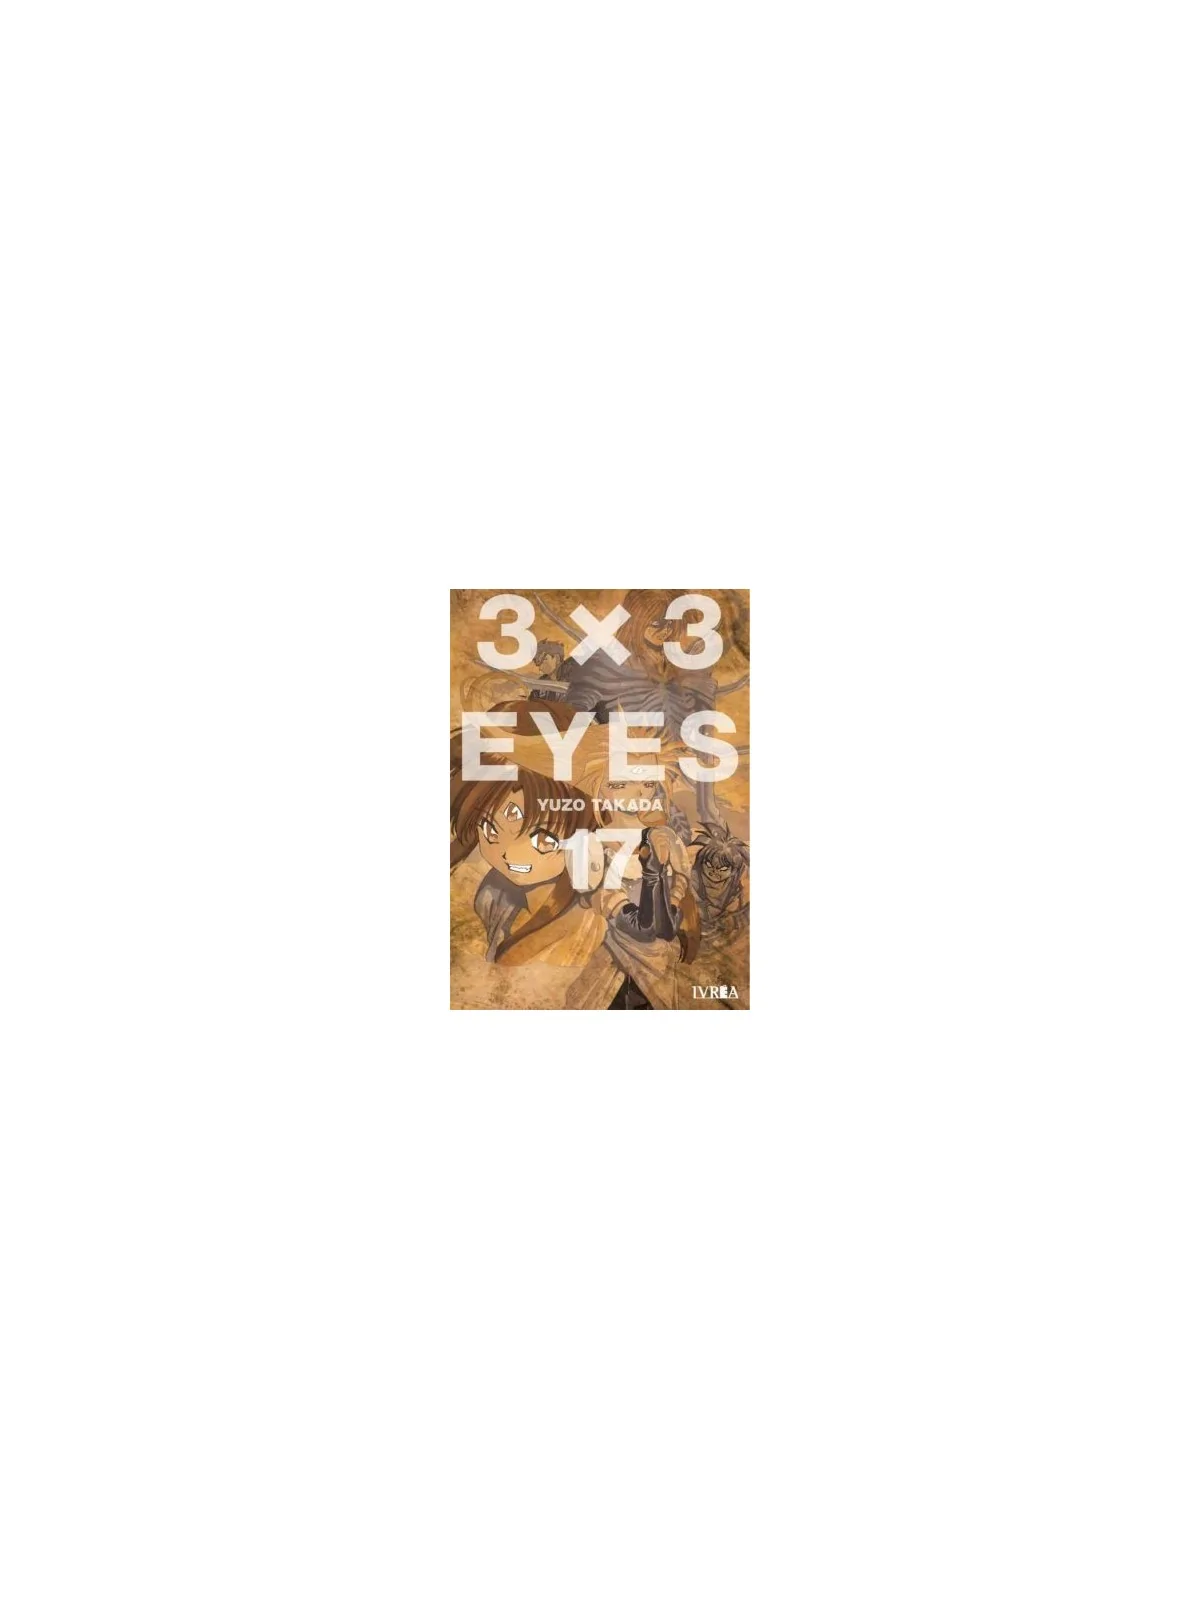 Comprar 3 x 3 Eyes 17 barato al mejor precio 13,30 € de Editorial Livr